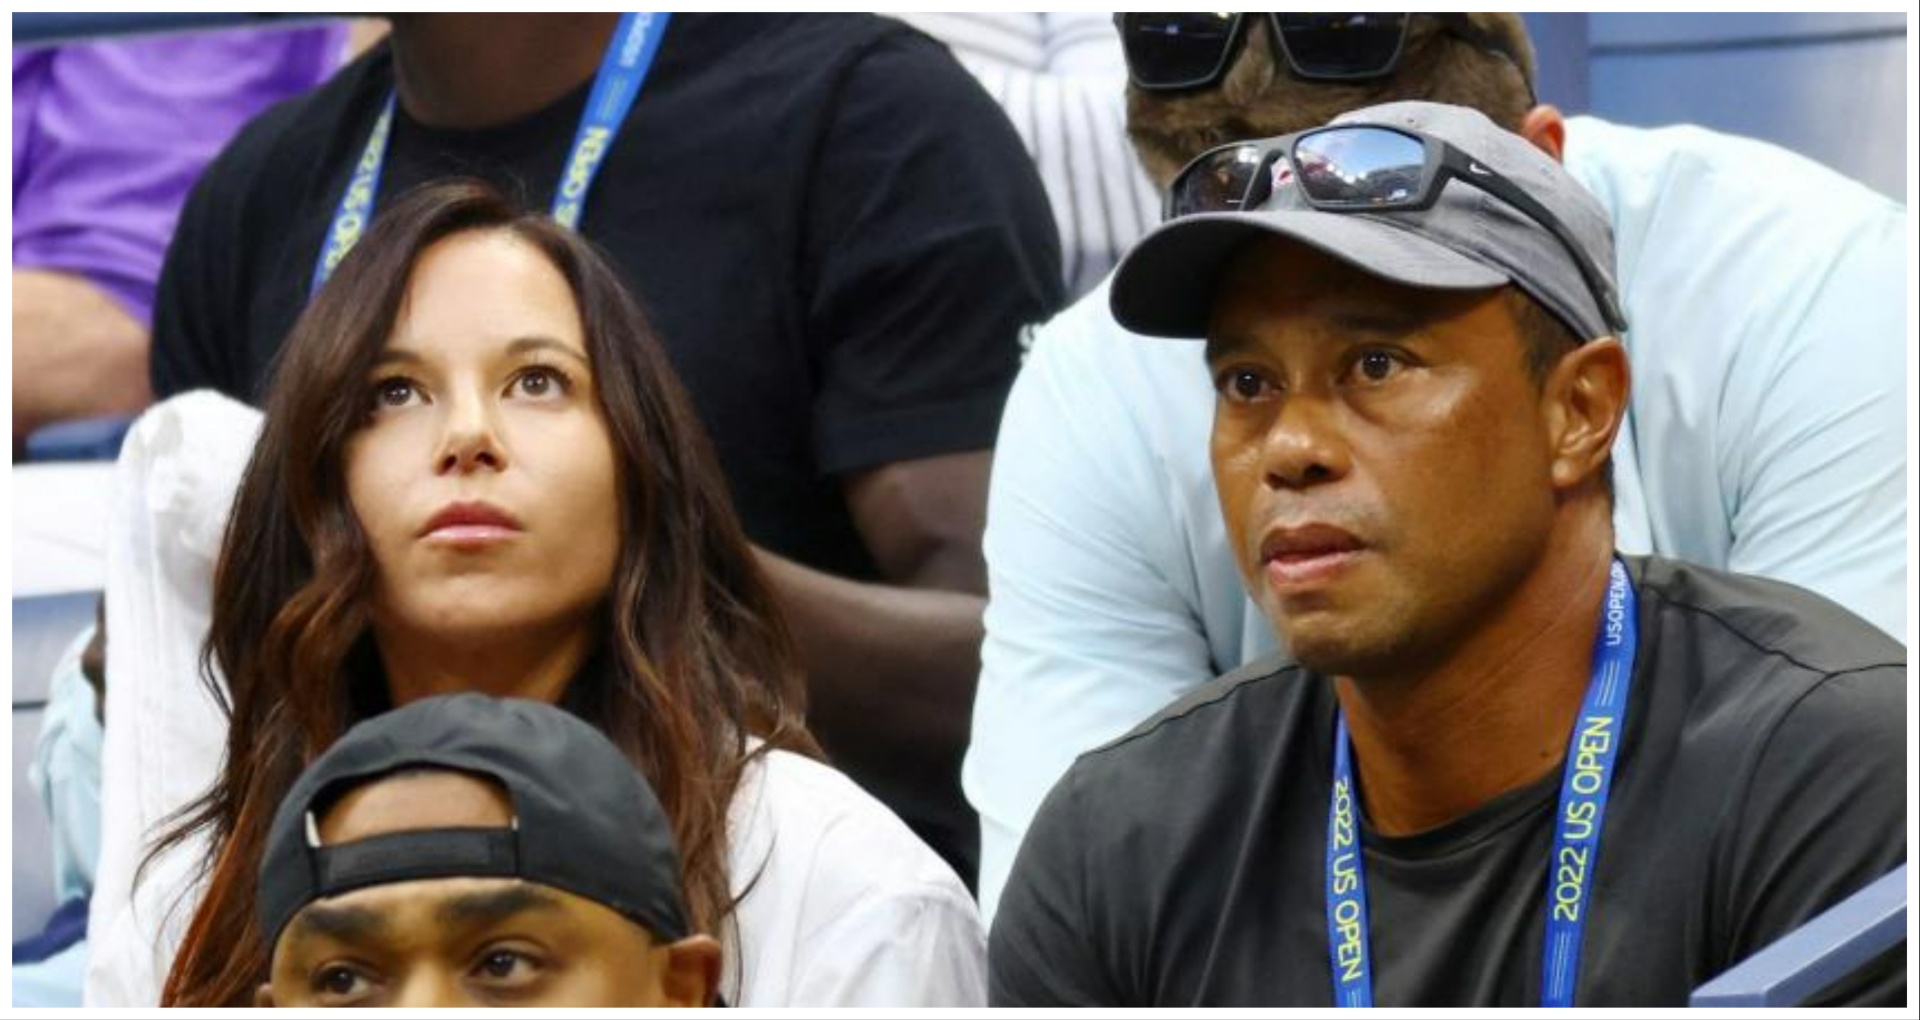 Huge WIN for Tiger Woods as judge labels Erica Hermans allegations image